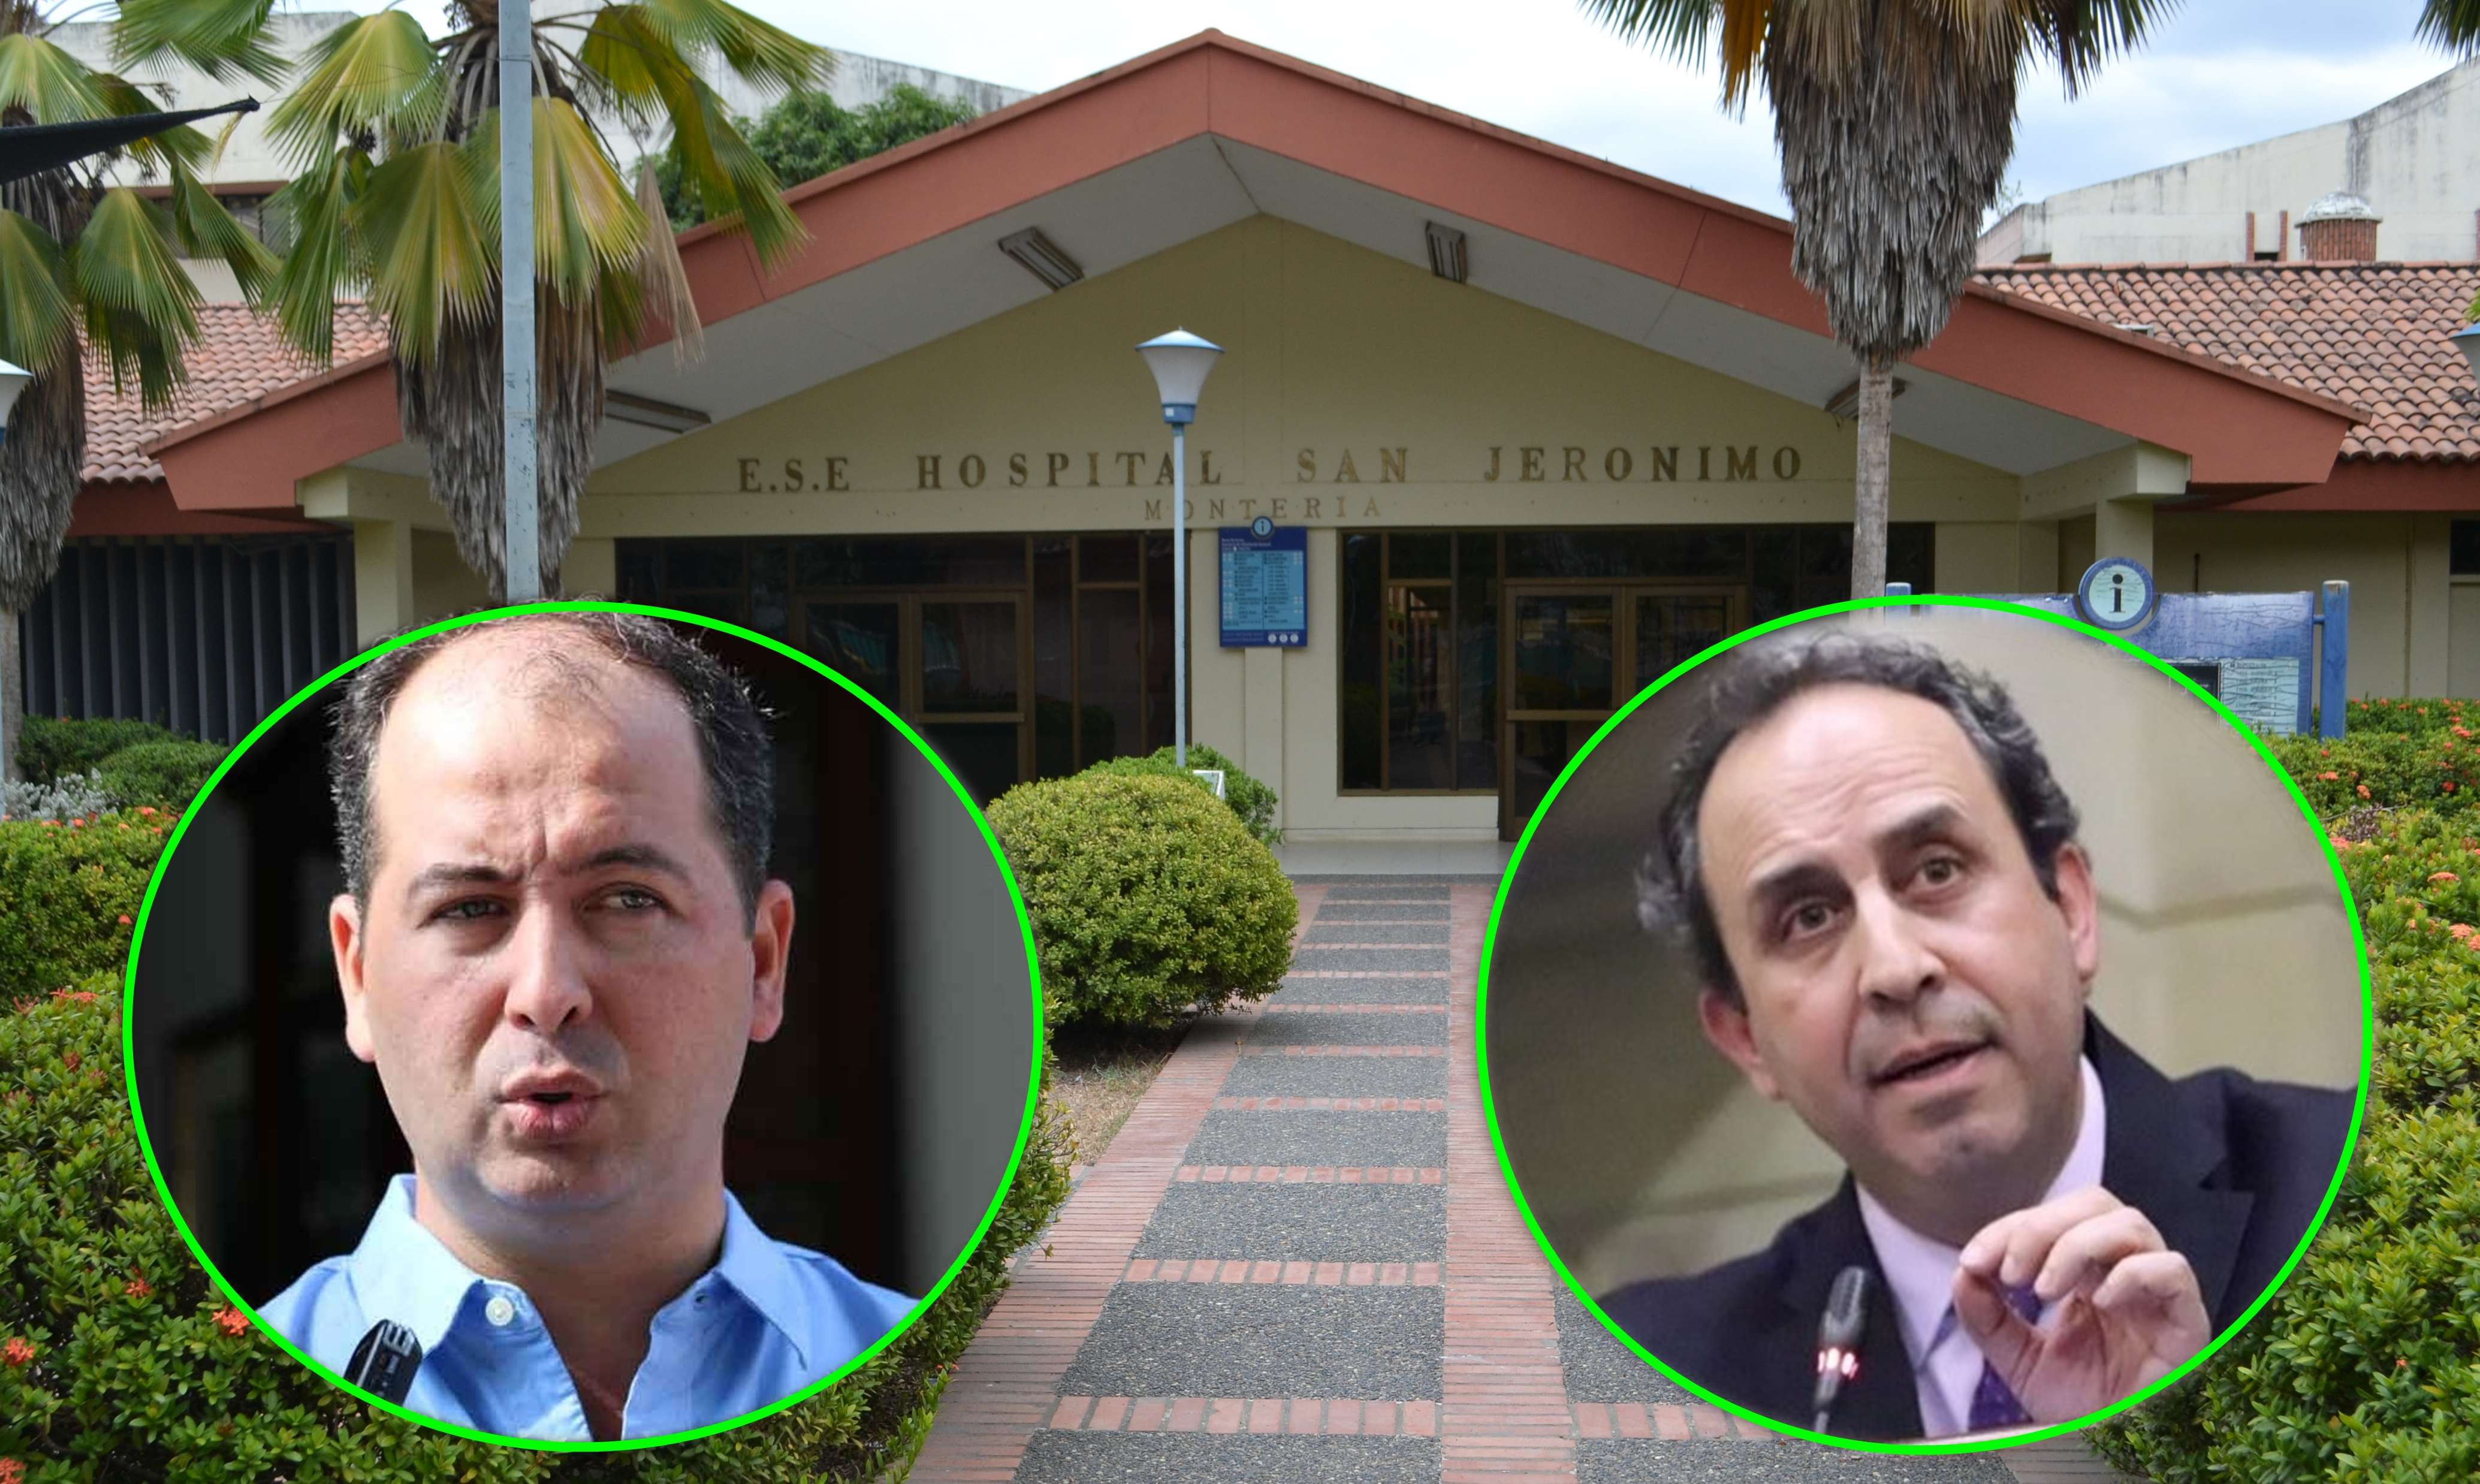 Los secretos del Supersalud y  el alcalde Marcos Daniel: unos socios que van por el Hospital San Jerónimo